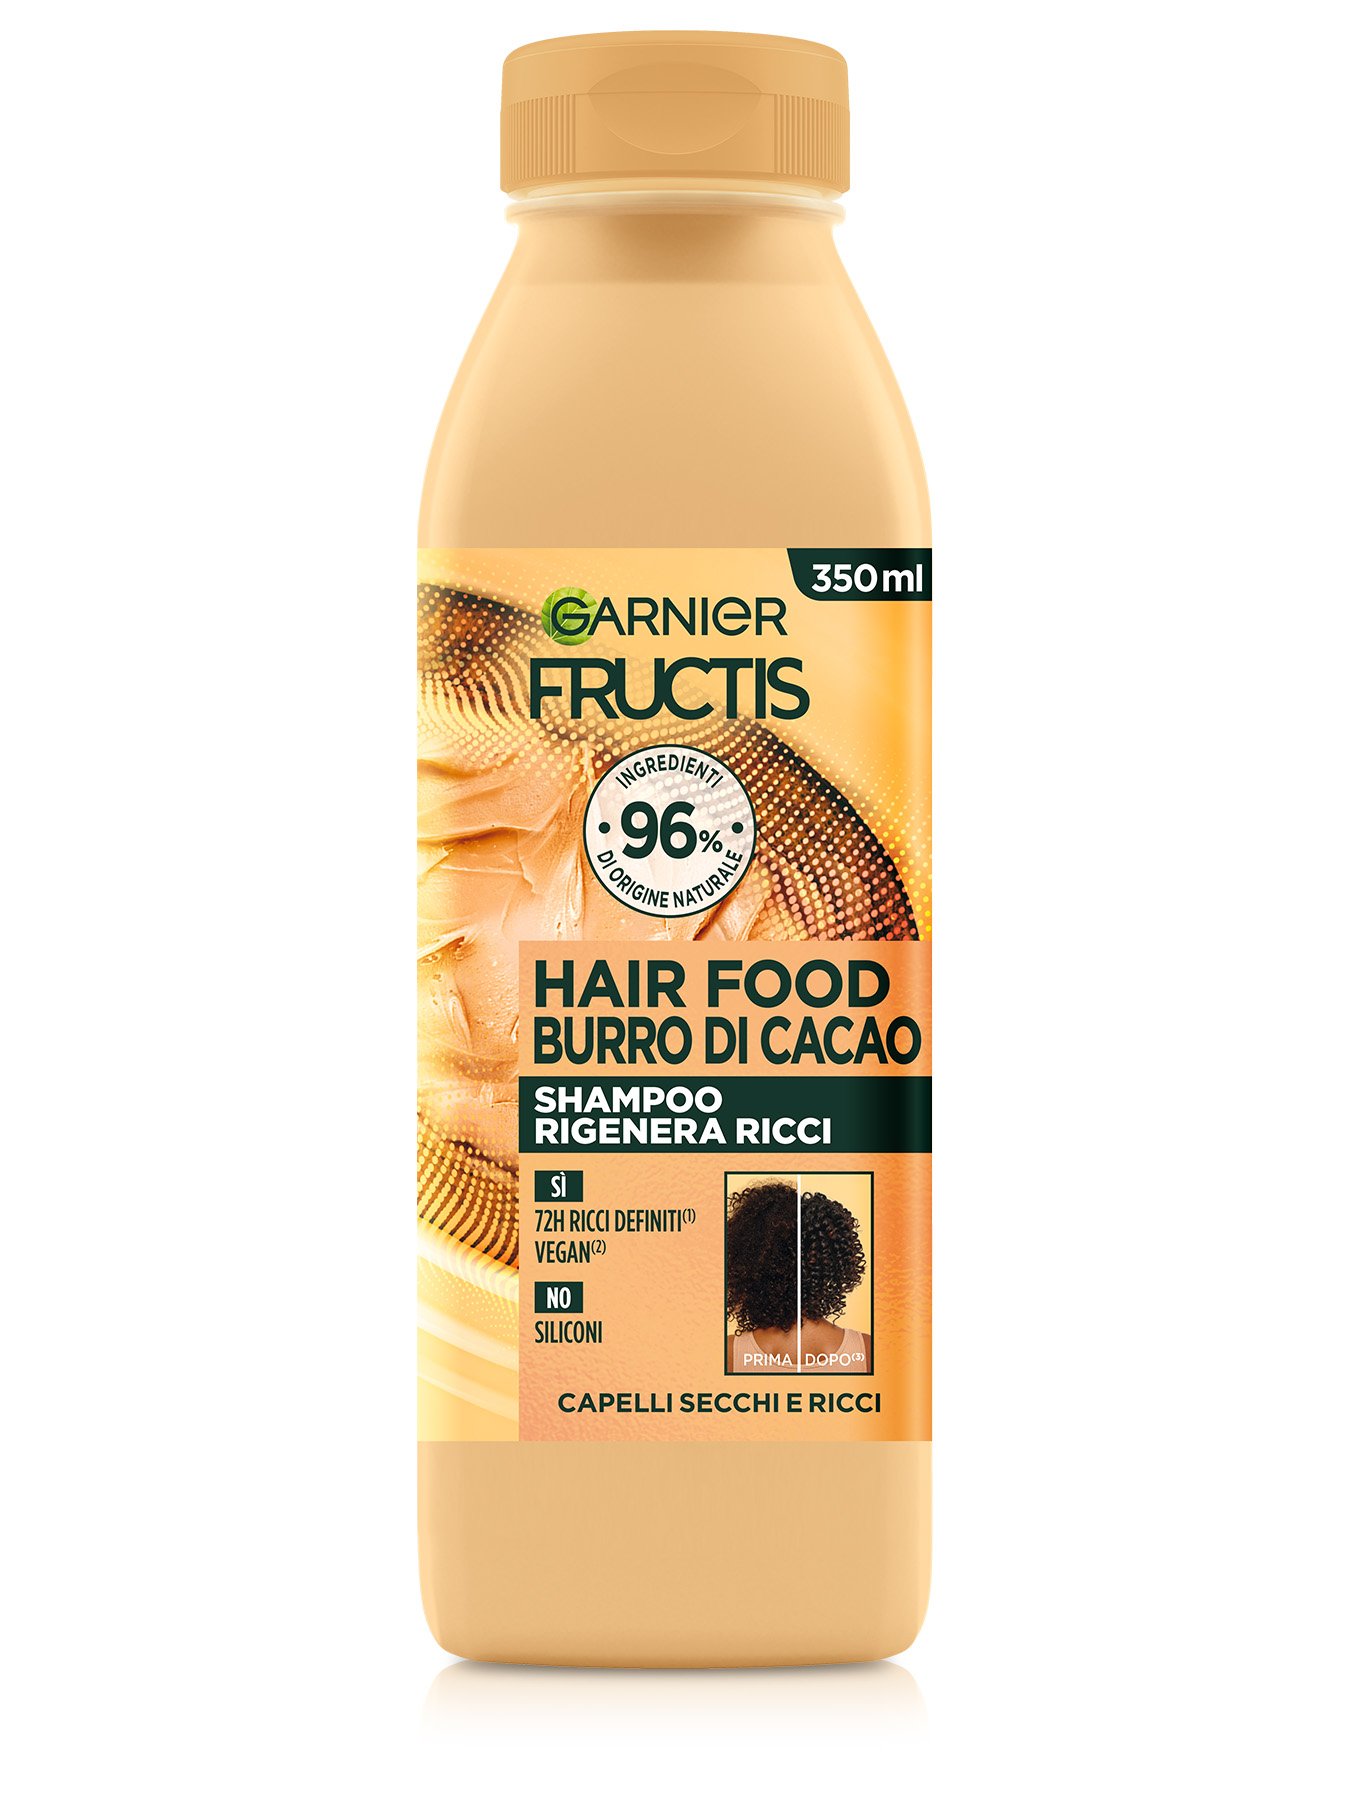 Fructis Hair Food Cacao Shampoo